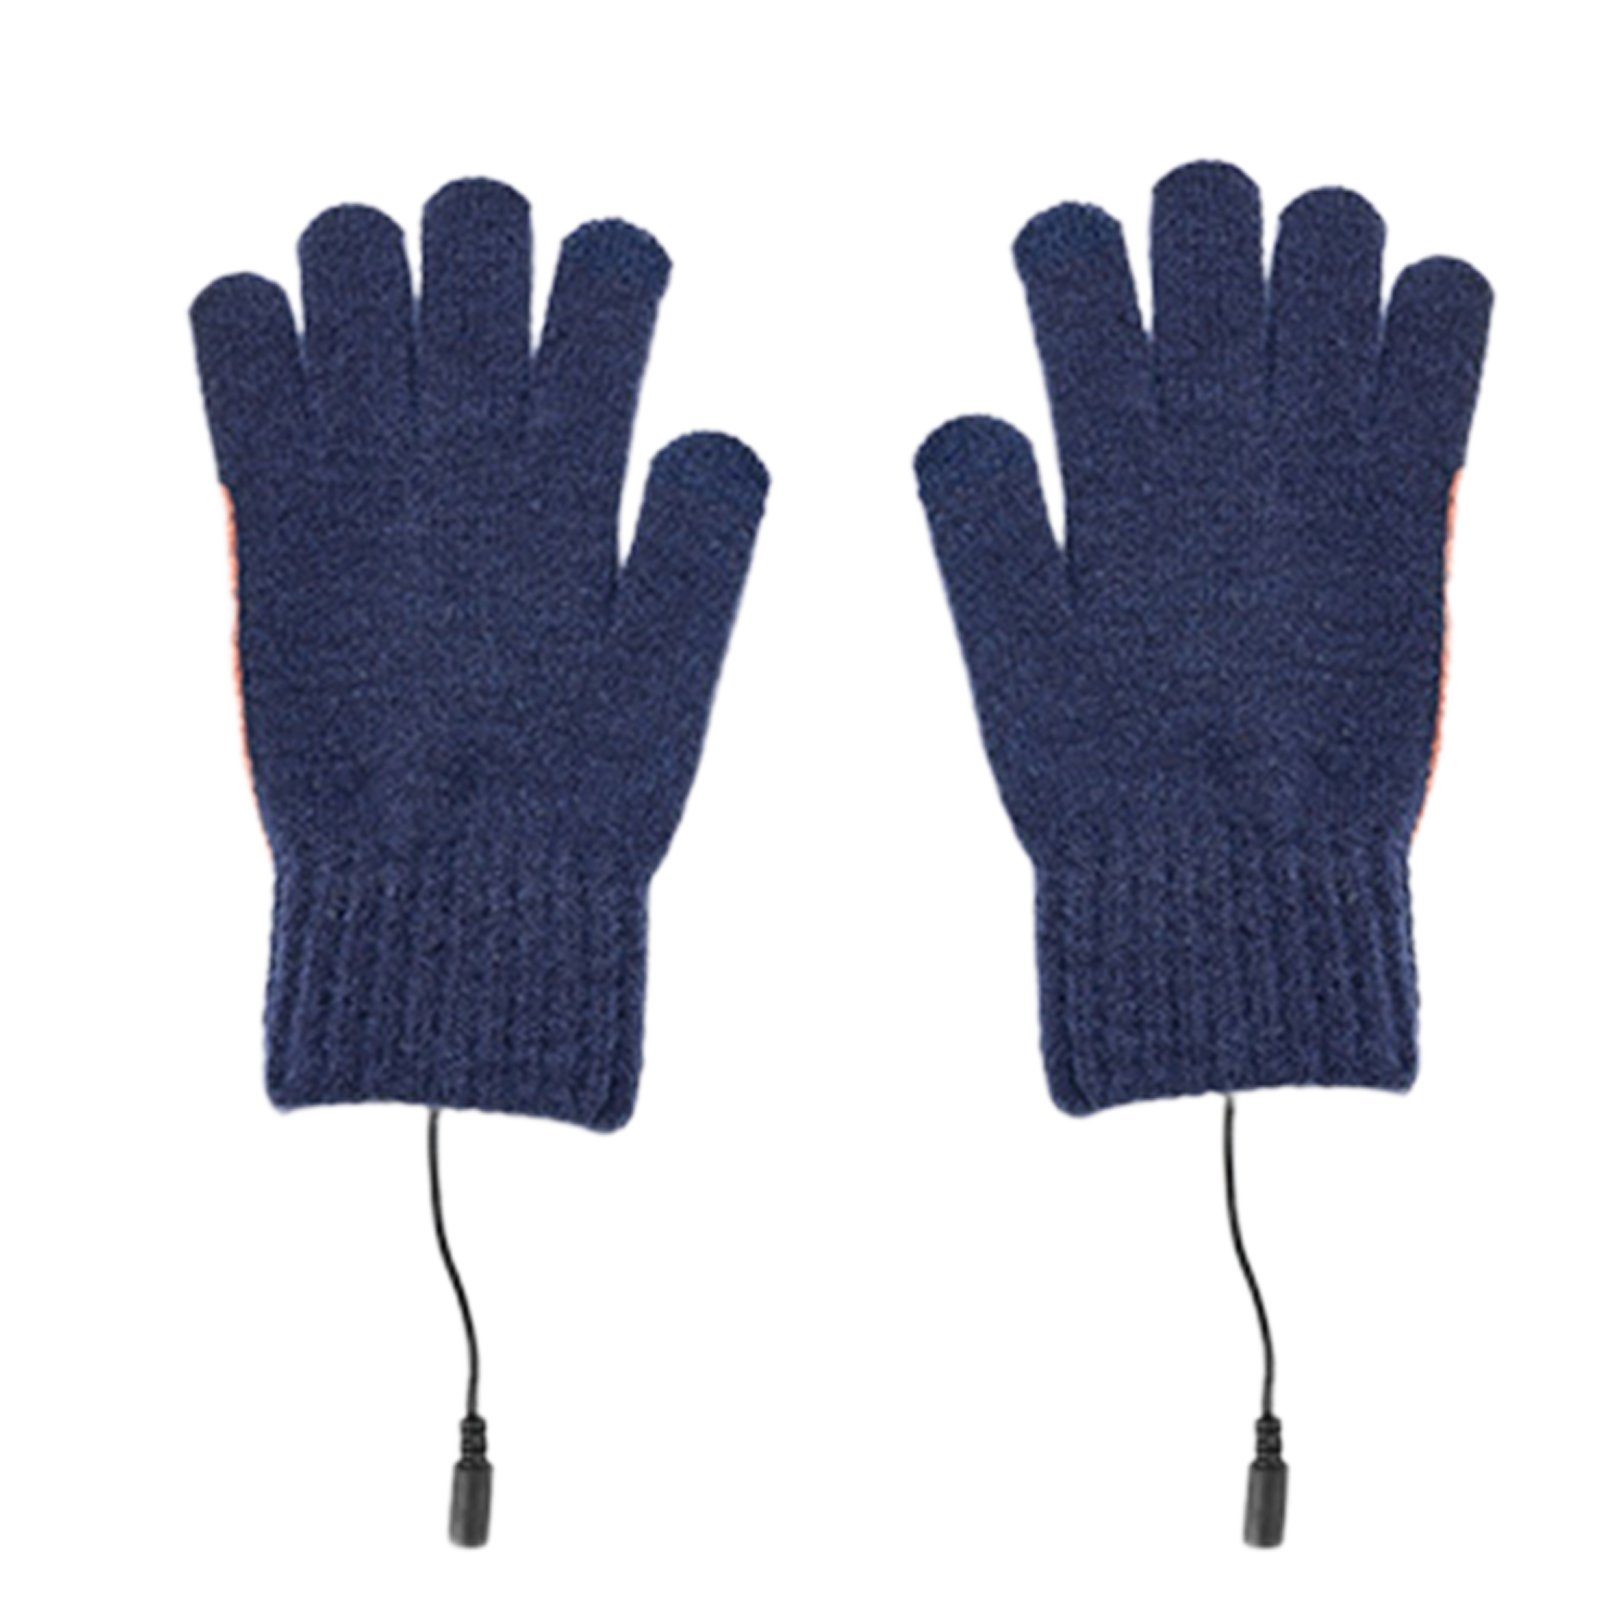 Fleecehandschuhe Fleecehandschuhe Navy blau Strickhandschuhe, USB-beheizte Sporthandschuh, Touchscreen, Blusmart Warmer